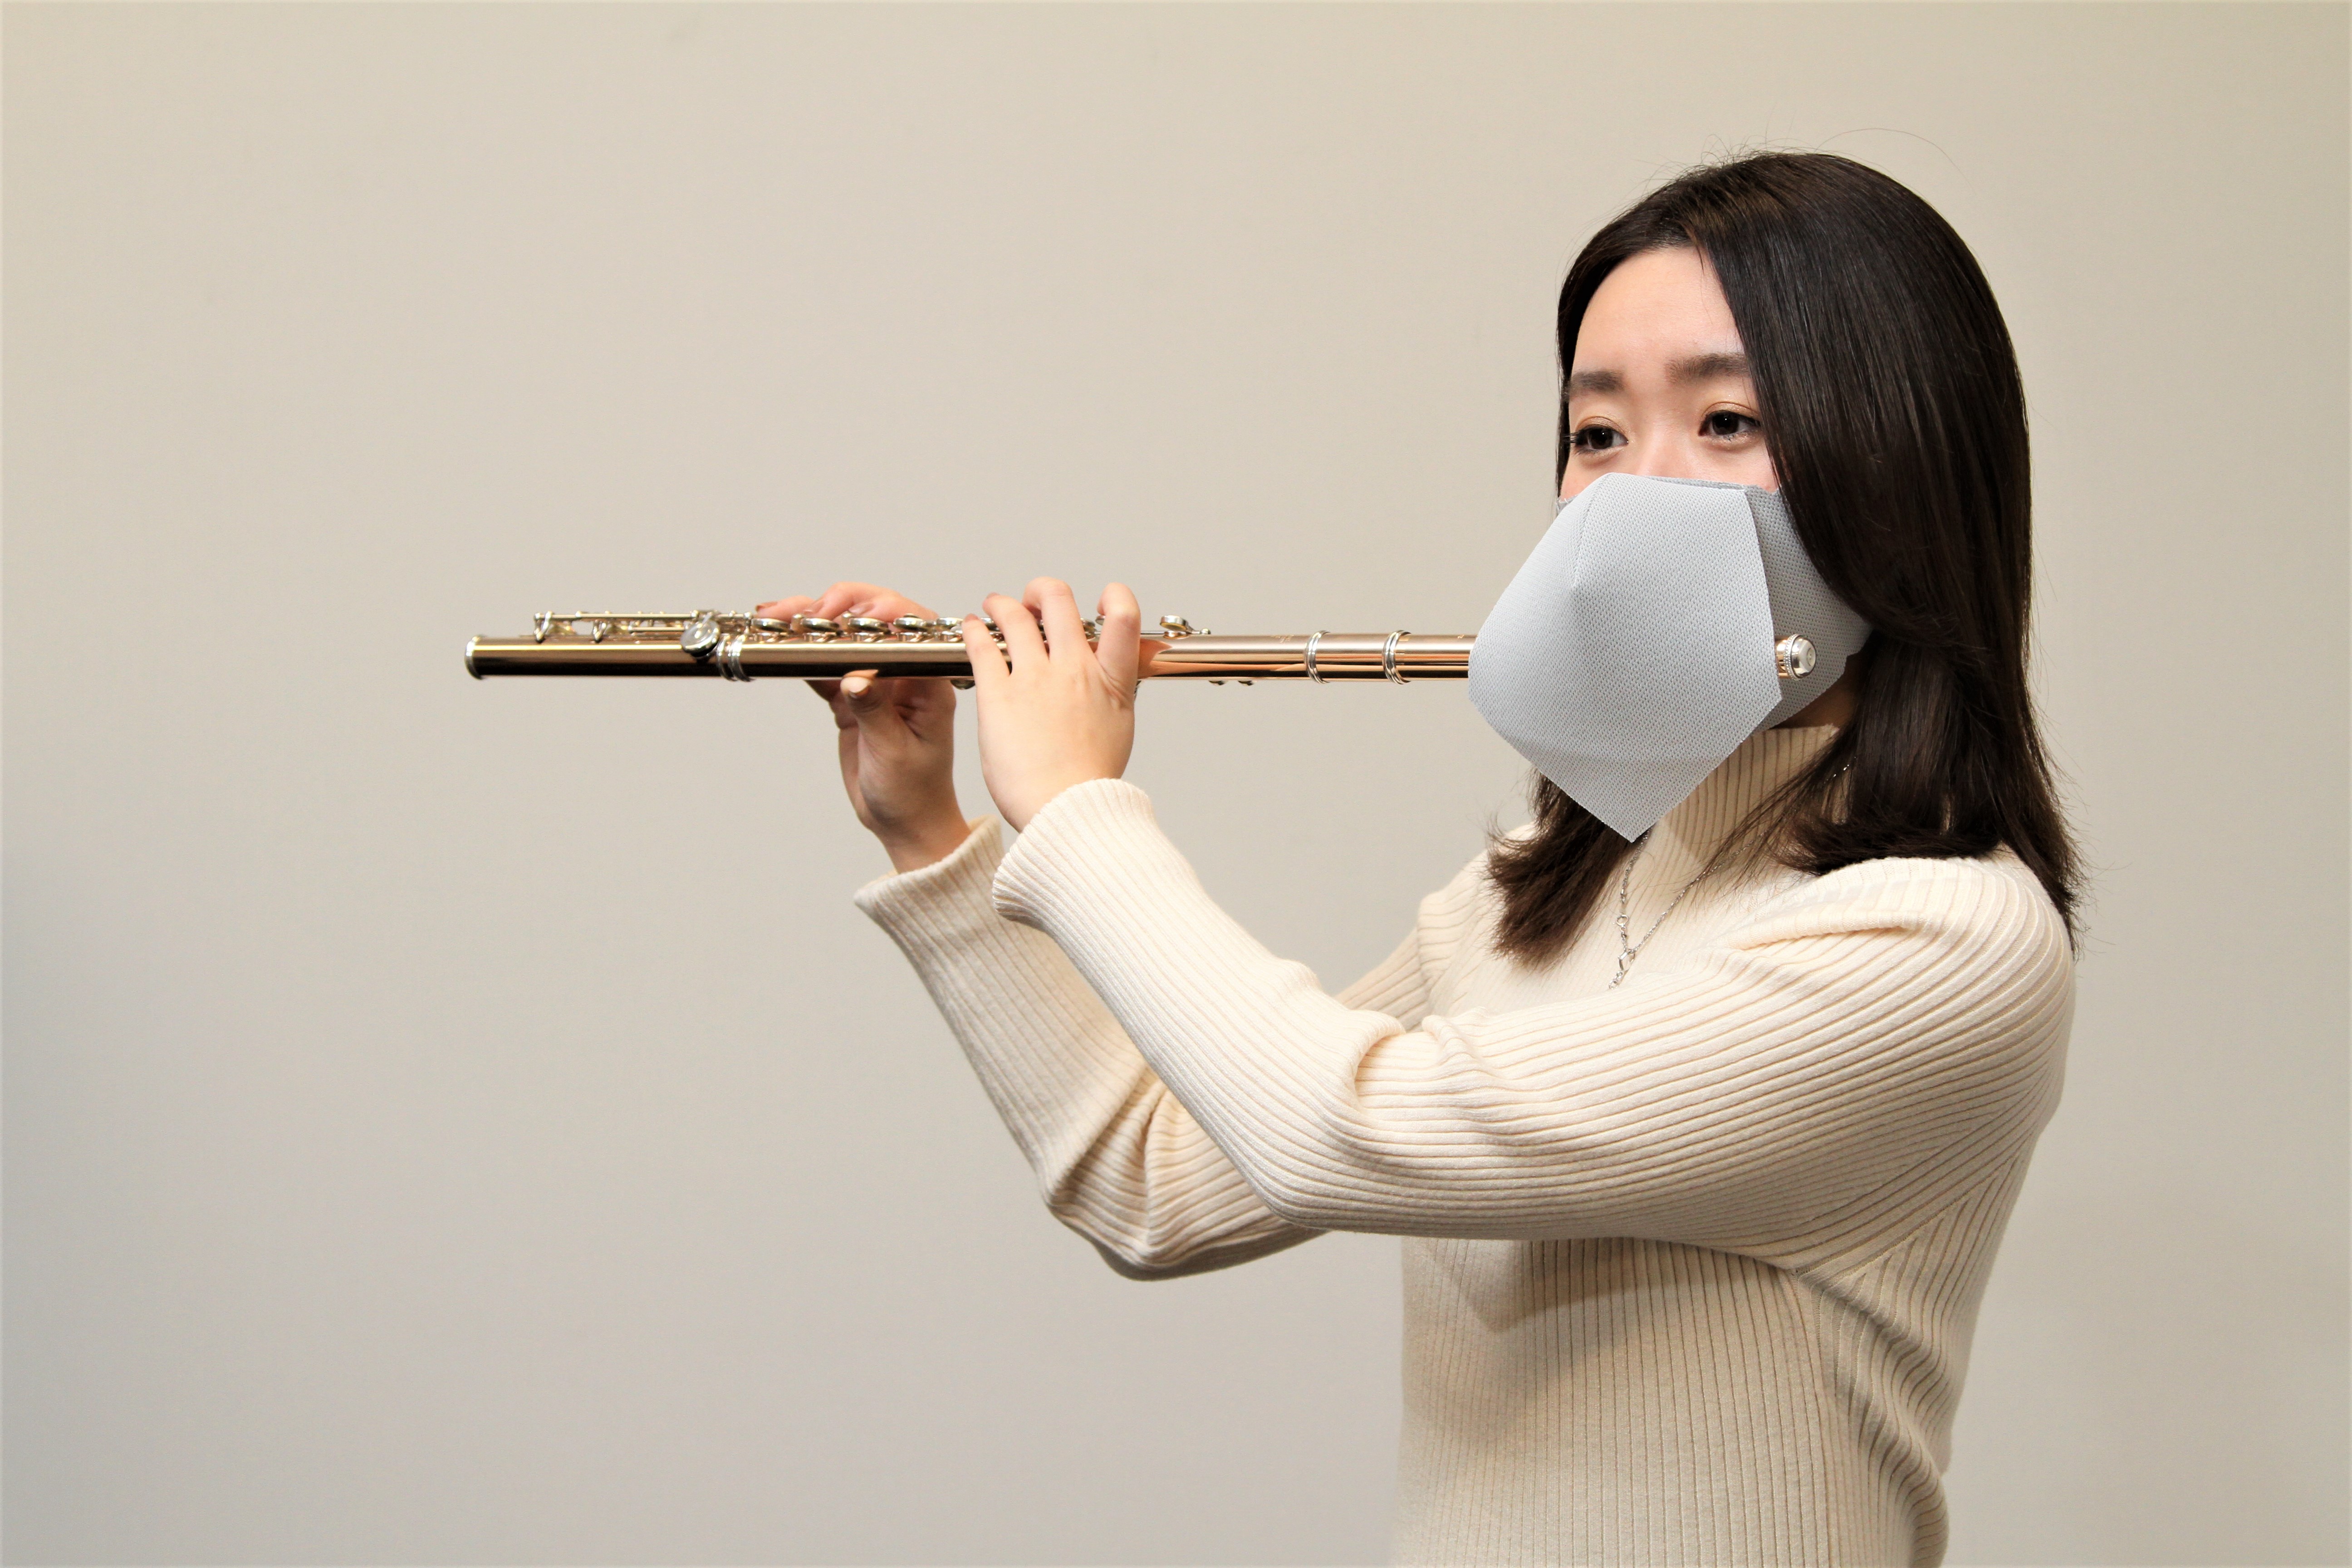 *【シリカクリン】フルート用マスク販売中 ご好評を得ている管楽器マスクのフルート用を販売中です。 **シリカクリン　フルート用 抗菌消臭立体マスク 新型コロナウイルスの影響で活動を自粛せざるを得ない状況が続いておりますね。このマスクは管楽器を演奏する際の飛沫を防止するマスクです。「周りに配慮しながら […]